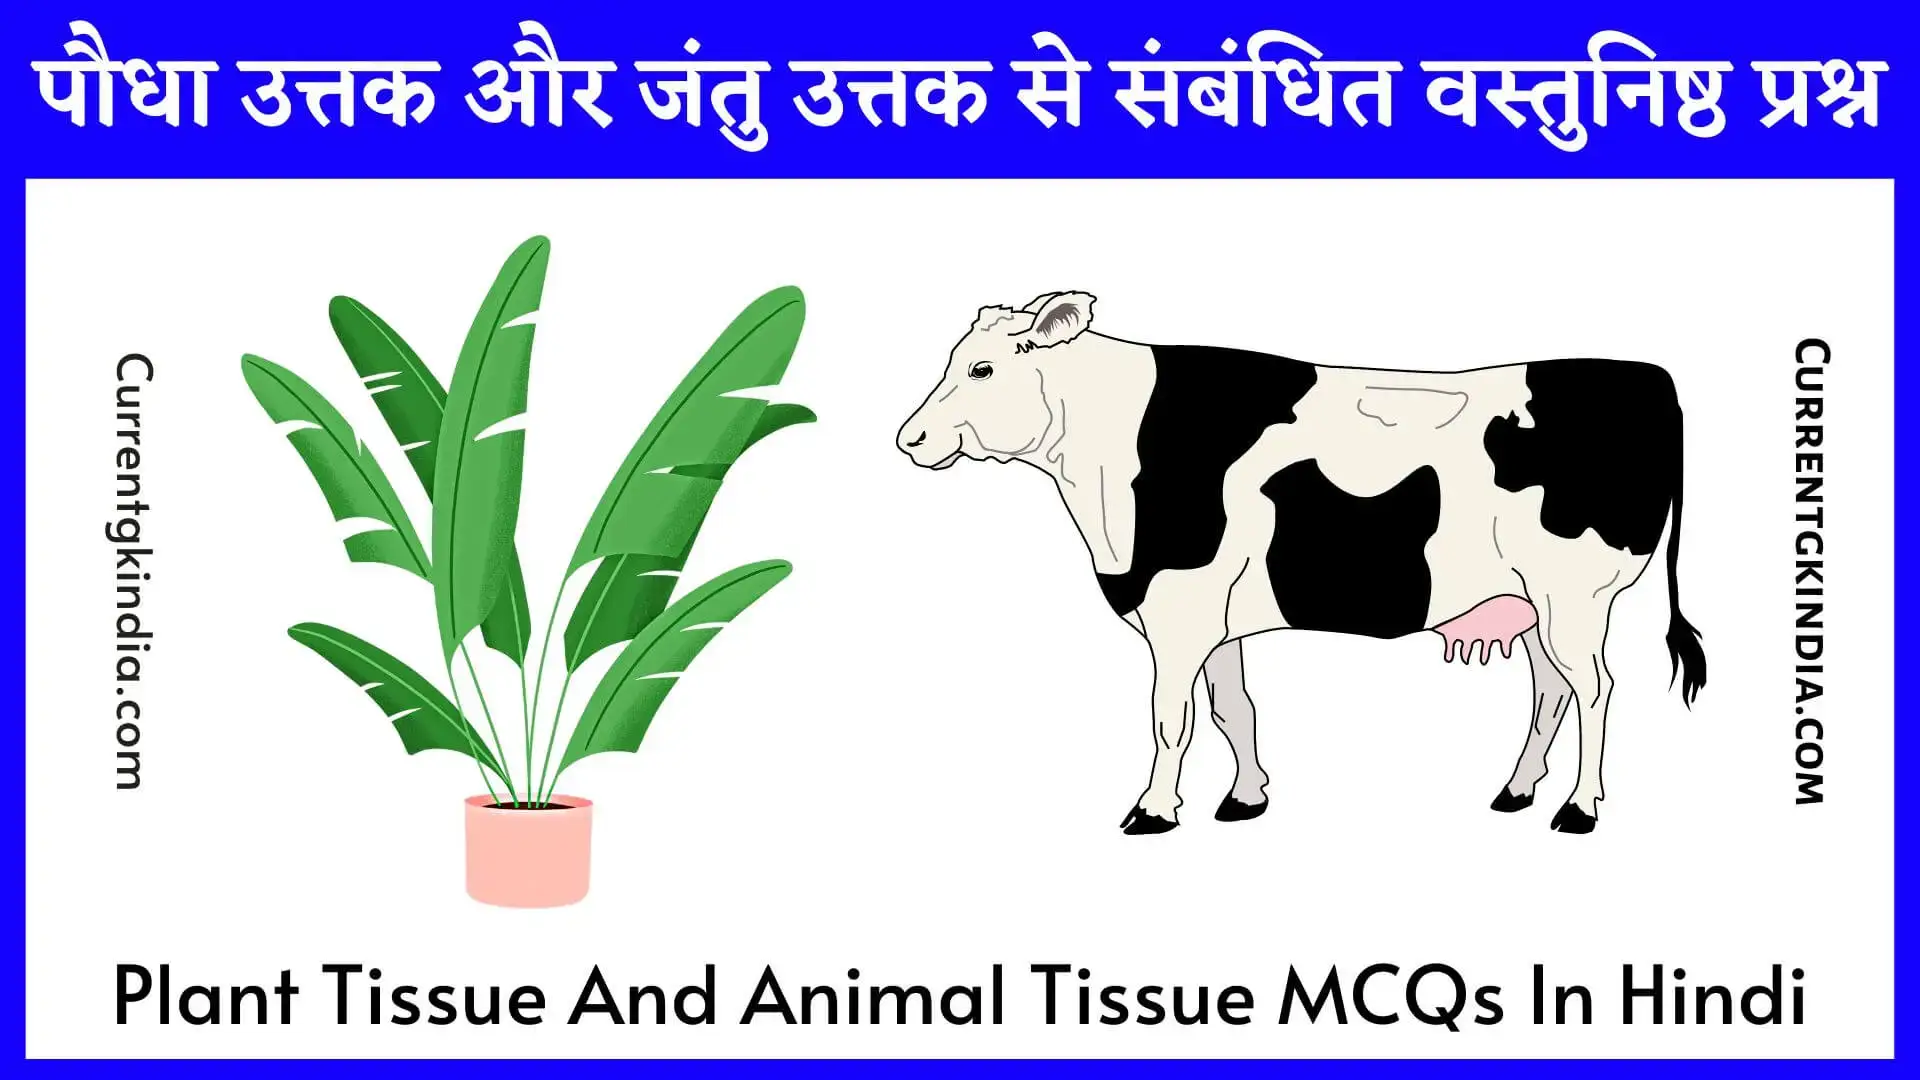 Plant Tissue And Animal Tissue MCQs In Hindi || पौधा उत्तक और जंतु उत्तक से  संबंधित वस्तुनिष्ठ प्रश्न {Top-57} » Current Gk India